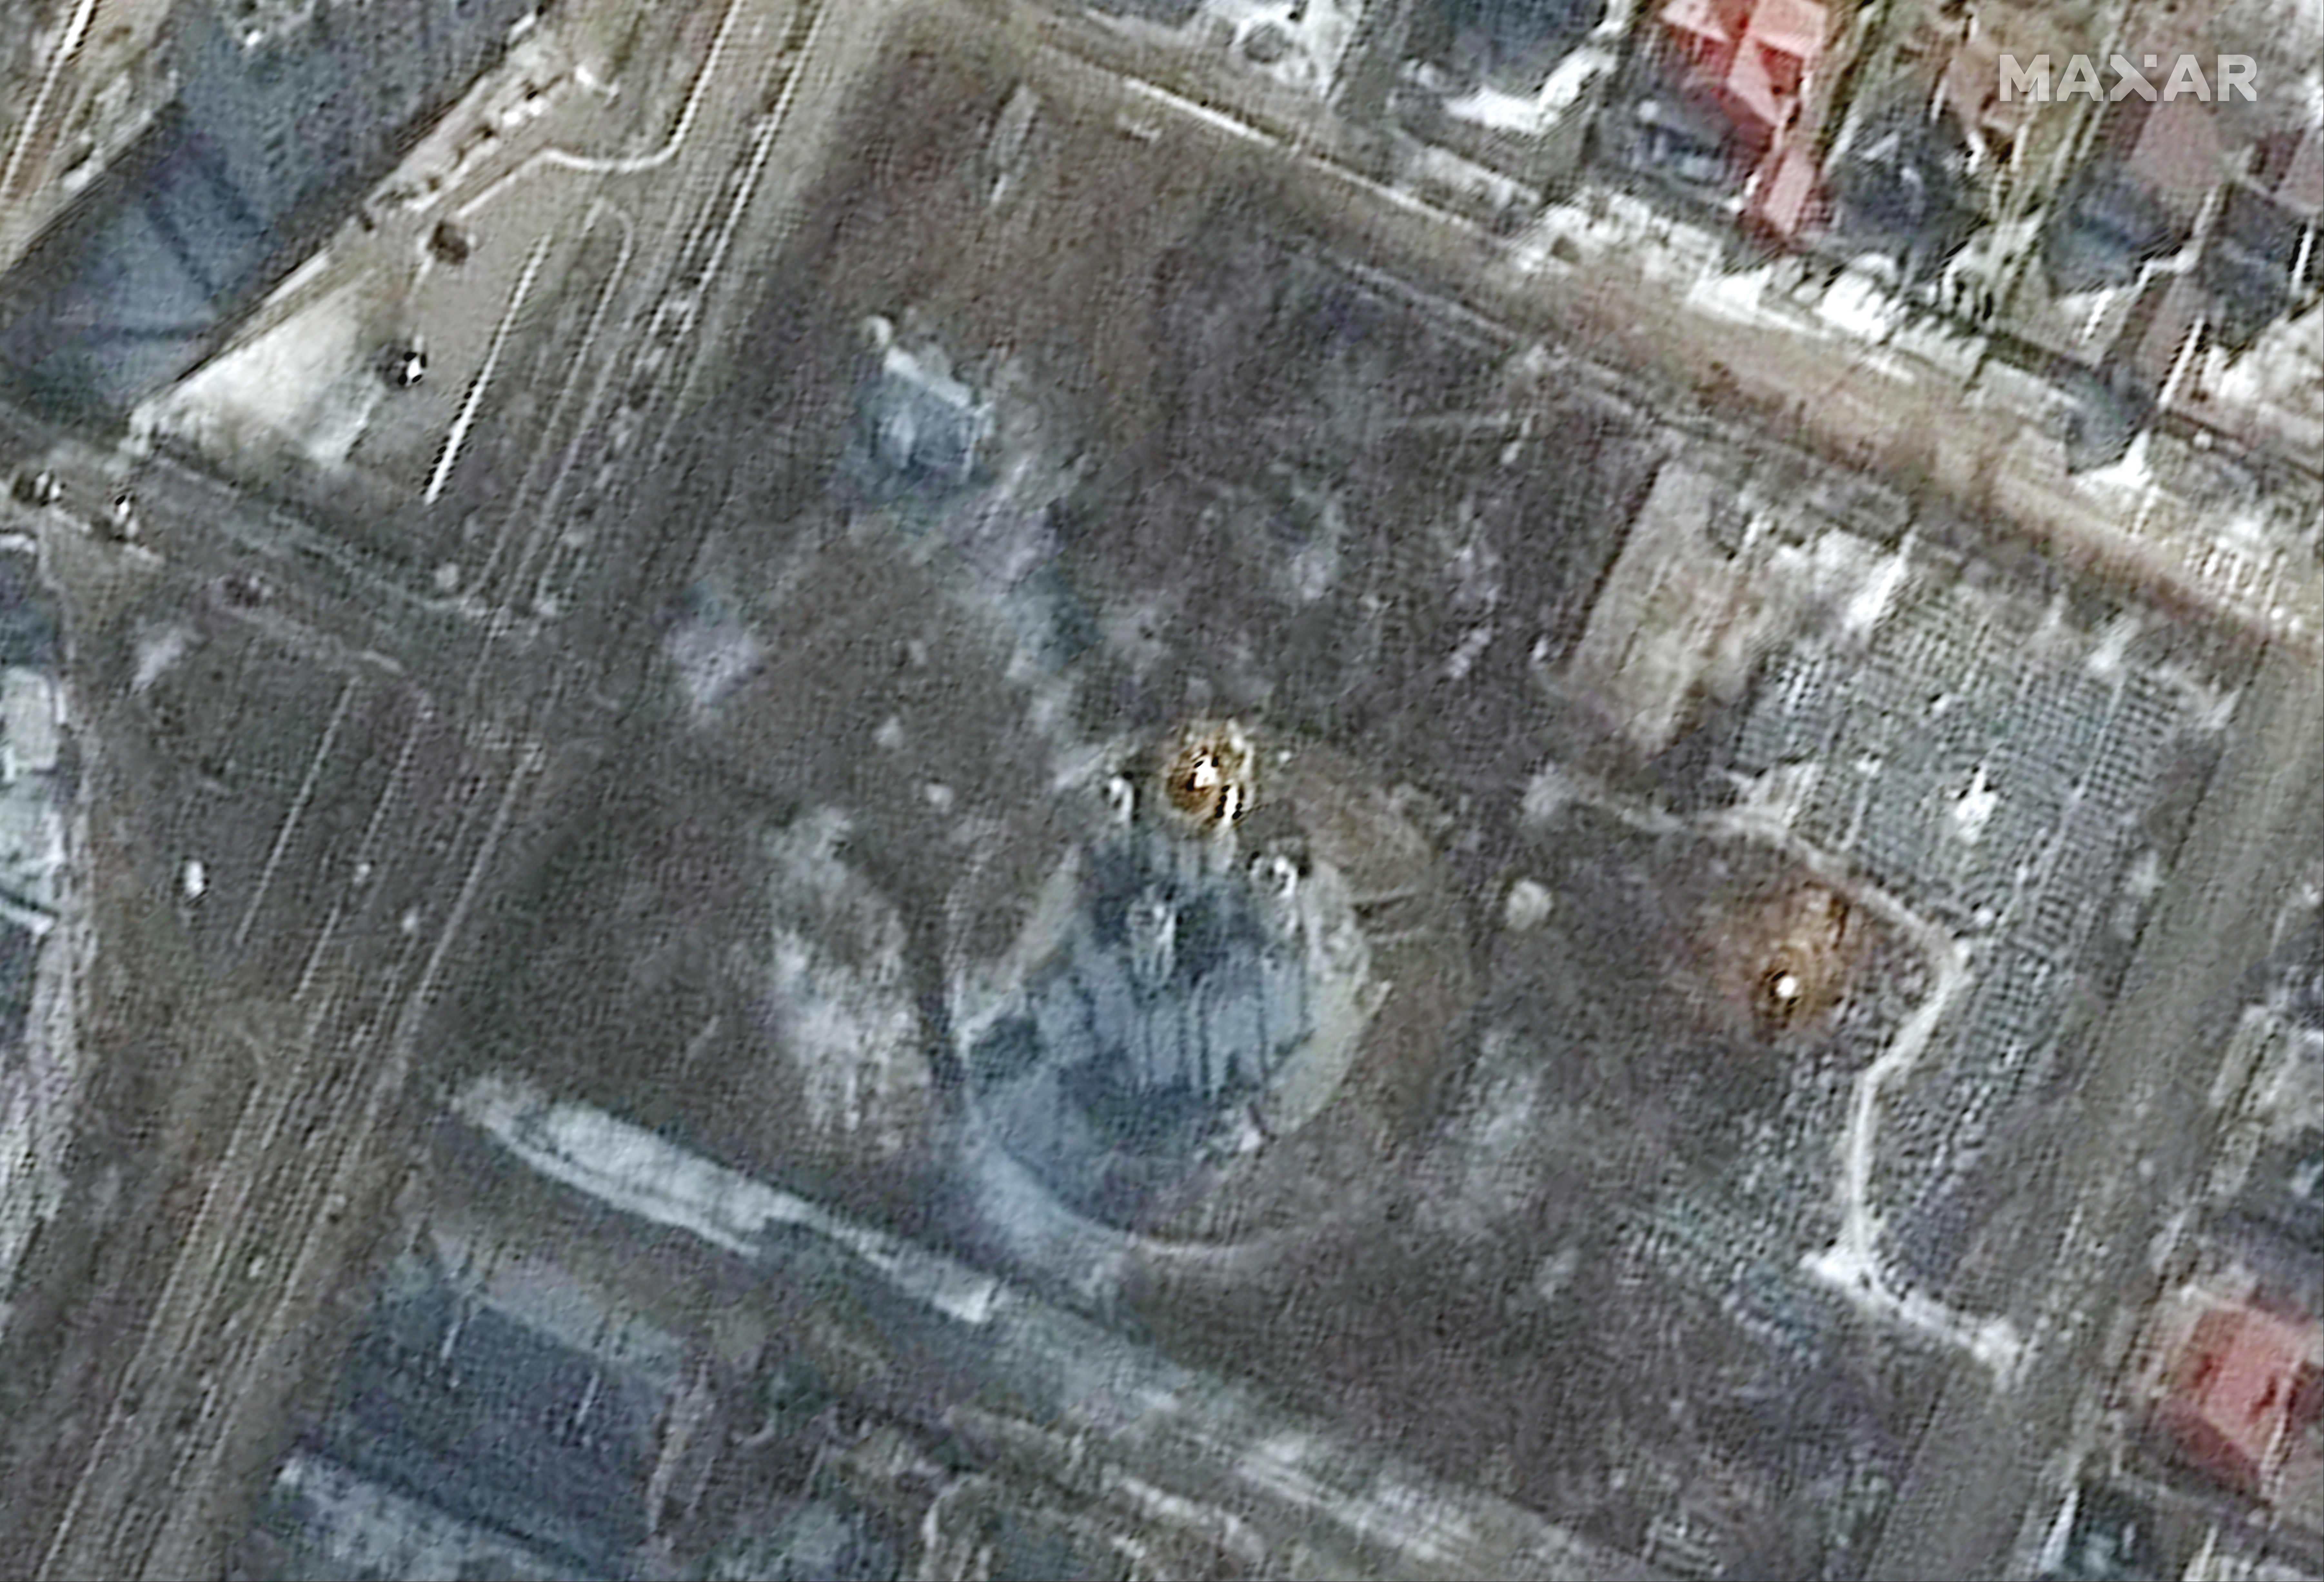 Esta imagen de satélite publicada por Maxar Technologies el 3 de abril de 2022 muestra una probable excavación de tierra en un cementerio (derecha) cerca de la Iglesia de San Andrés y Pyervozvannoho Todos los Santos en Bucha, Ucrania, el 10 de marzo de 2022